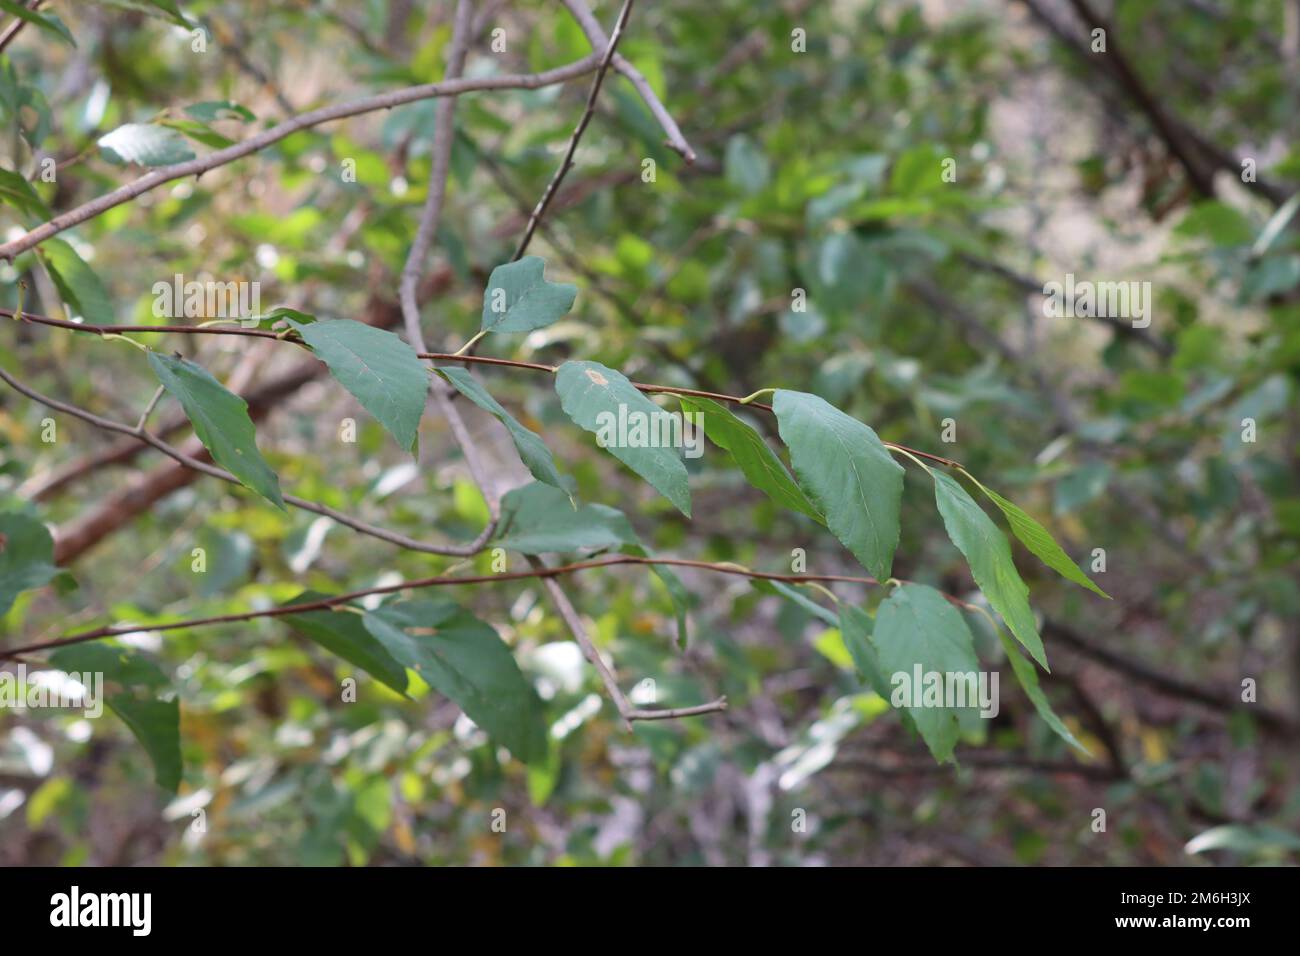 Feuilles elliptiques vertes alternées, proches, de l'Alnus rhombifolia, de Betulaceae, arbre indigène dans les montagnes de Santa Monica, en hiver. Banque D'Images